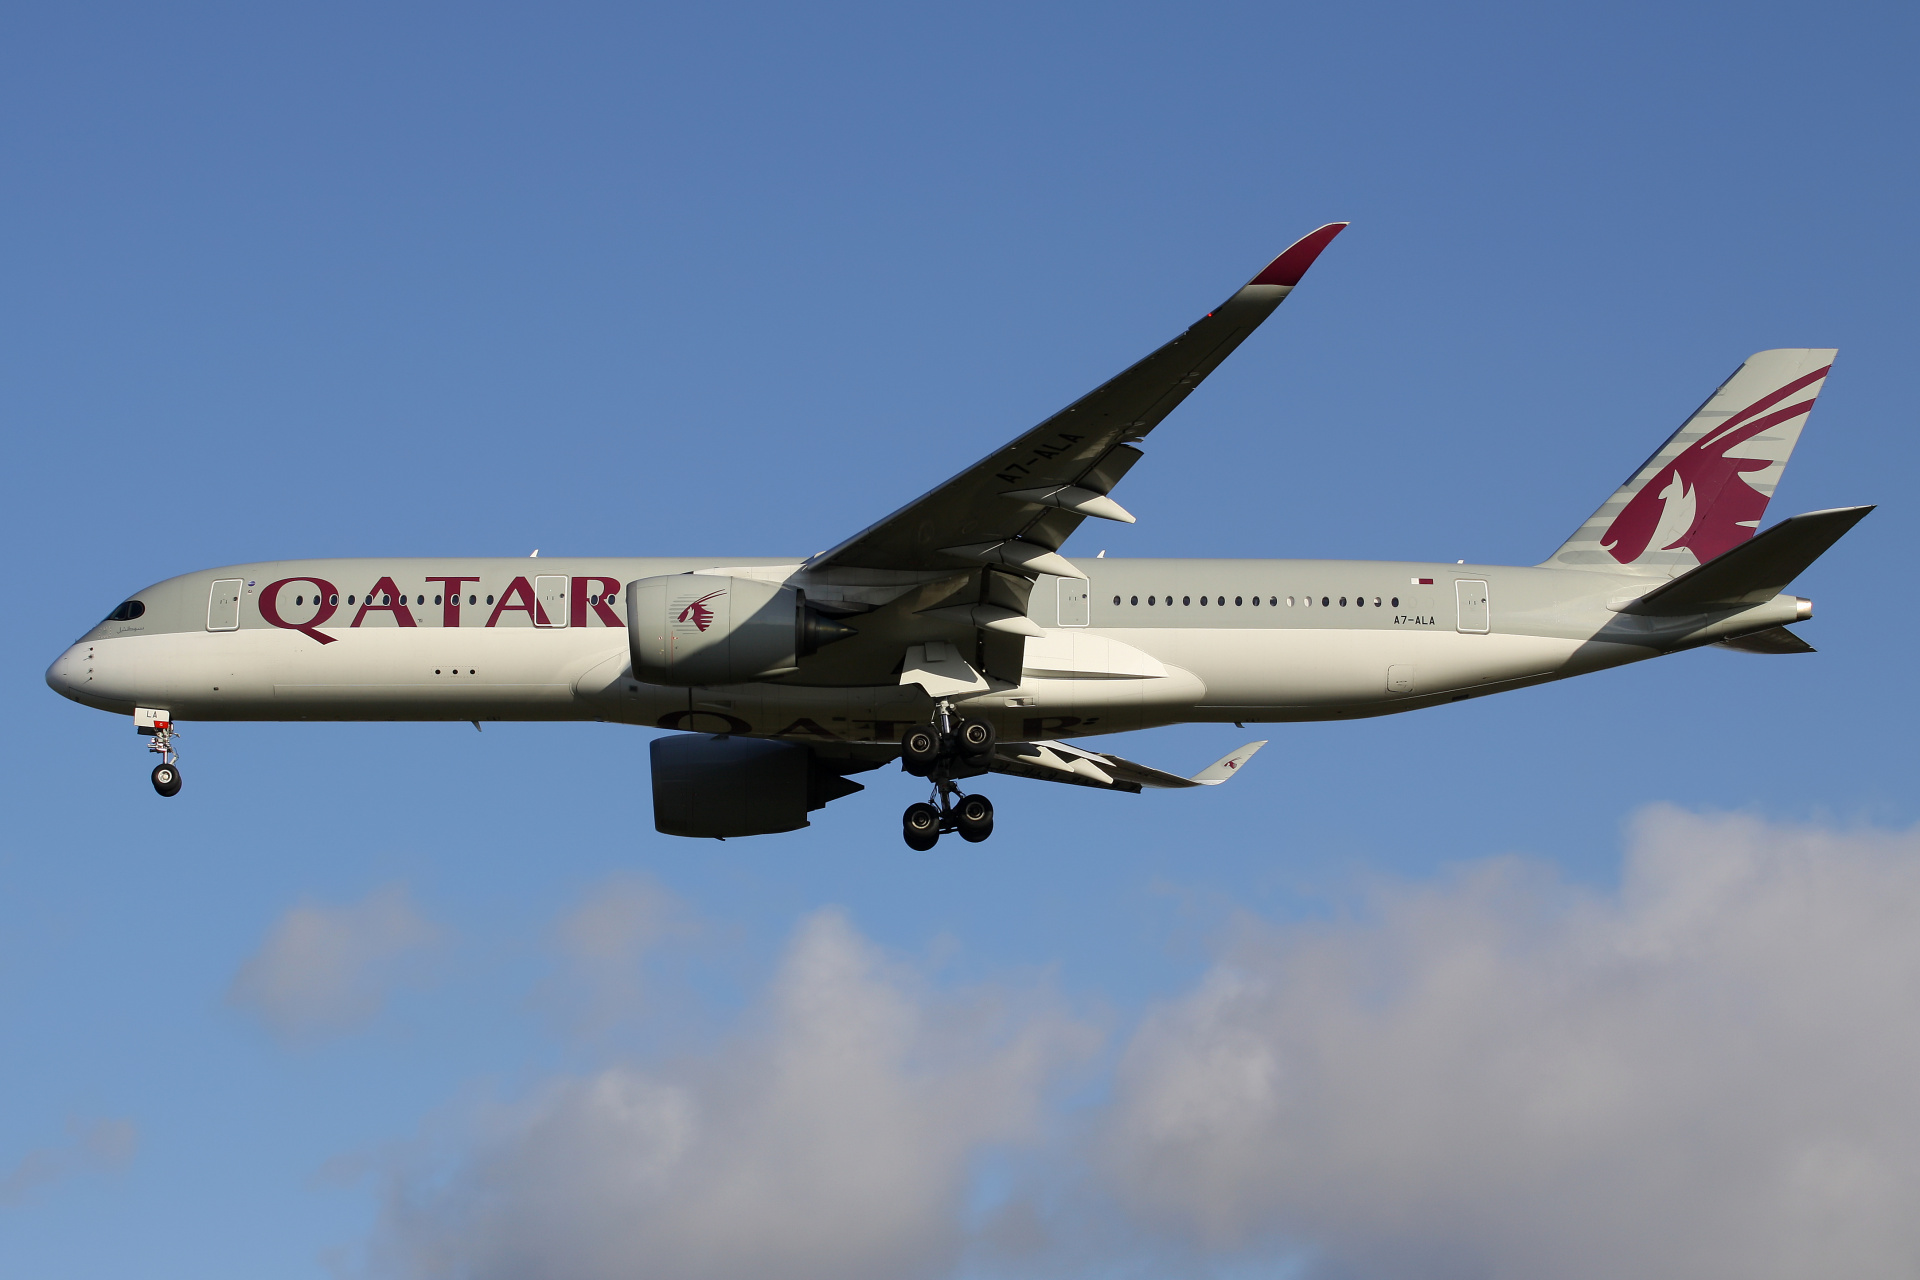 A7-ALA (Aircraft » EPWA Spotting » Airbus A350-900 » Qatar Airways)